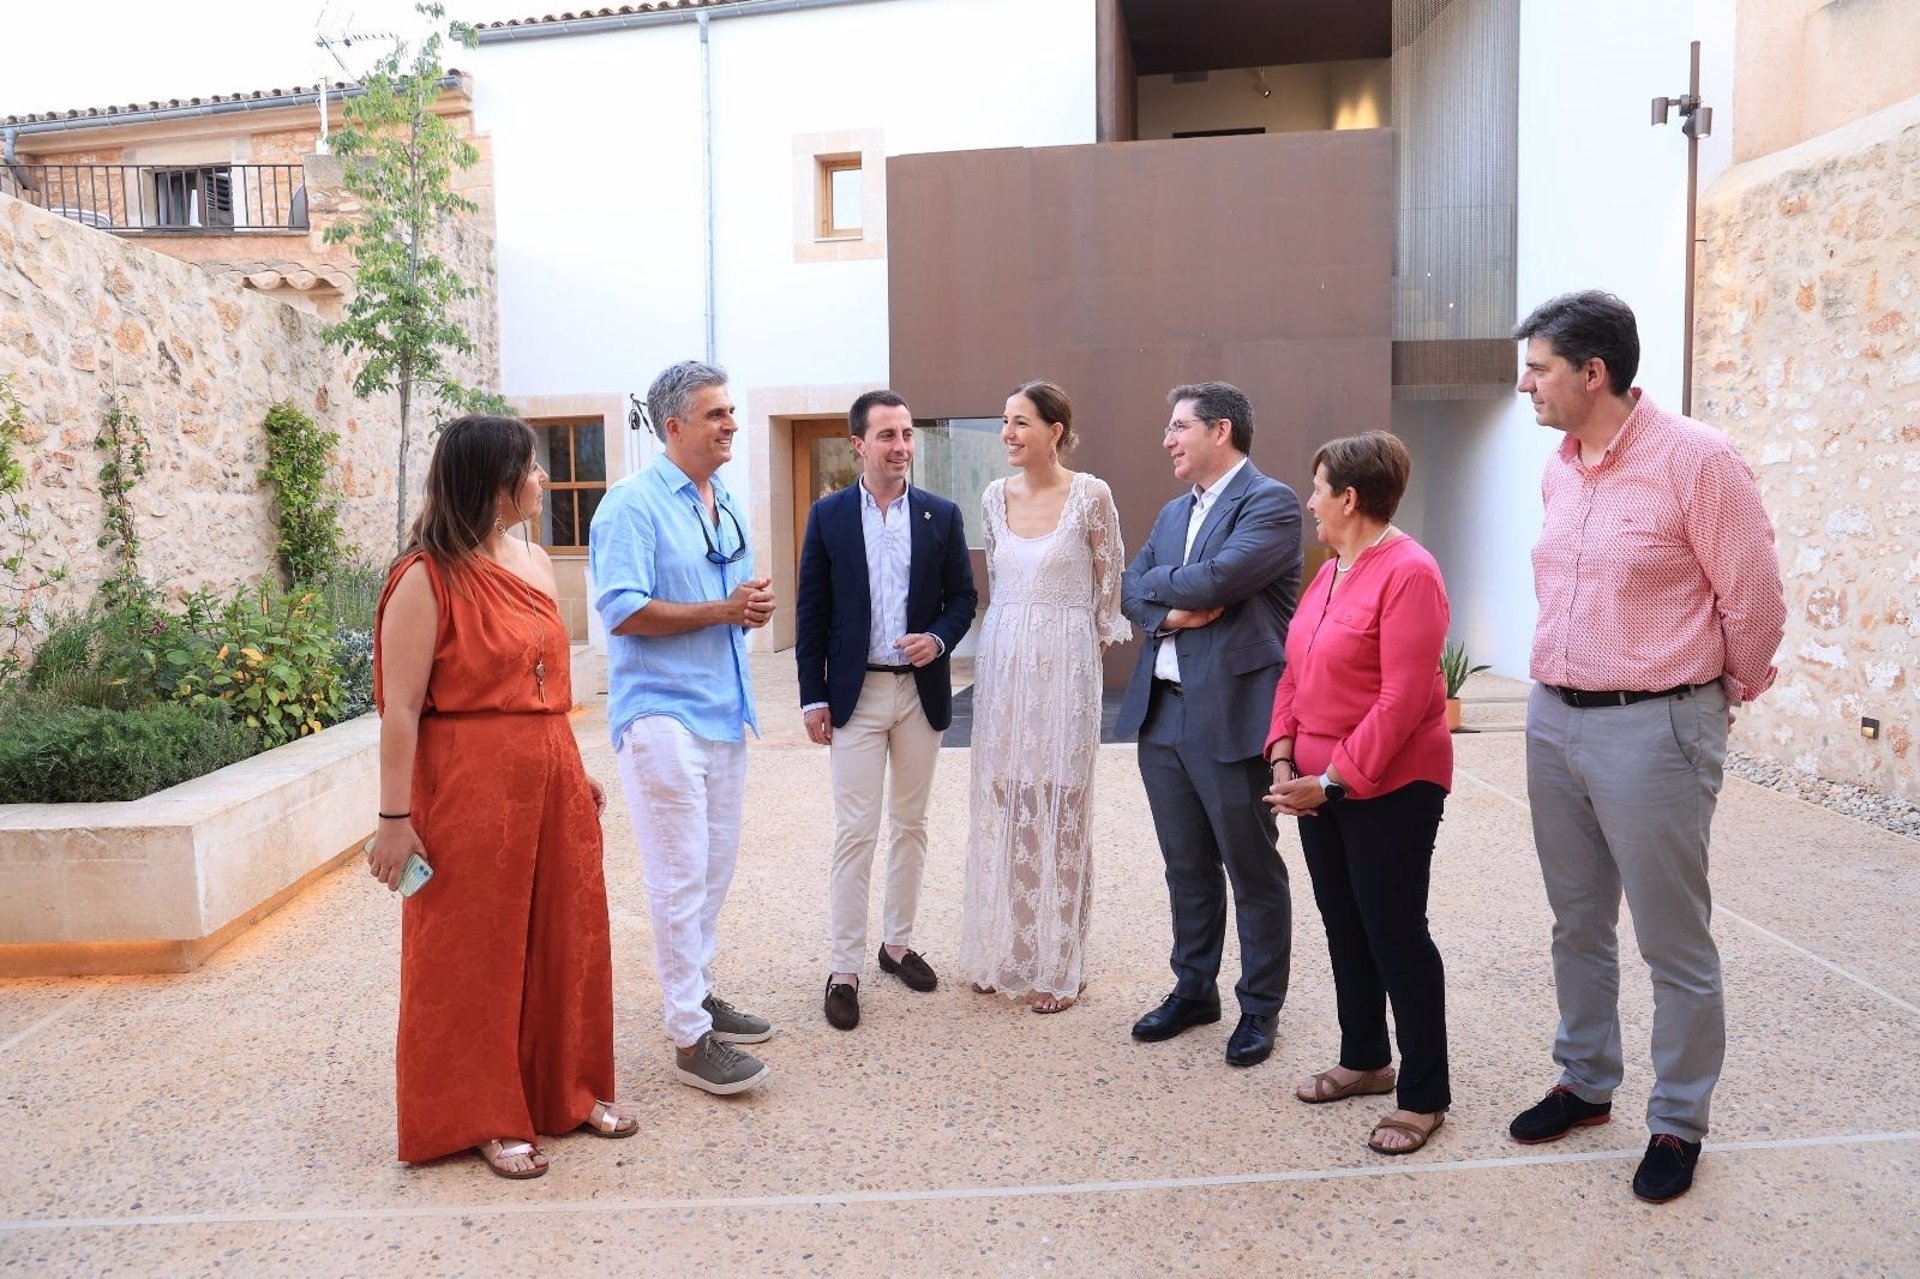 El Consell de Mallorca abre las puertas de la Casa Blai Bonet. Centro de Poesía de Santanyí - CONSELL DE MALLORCA